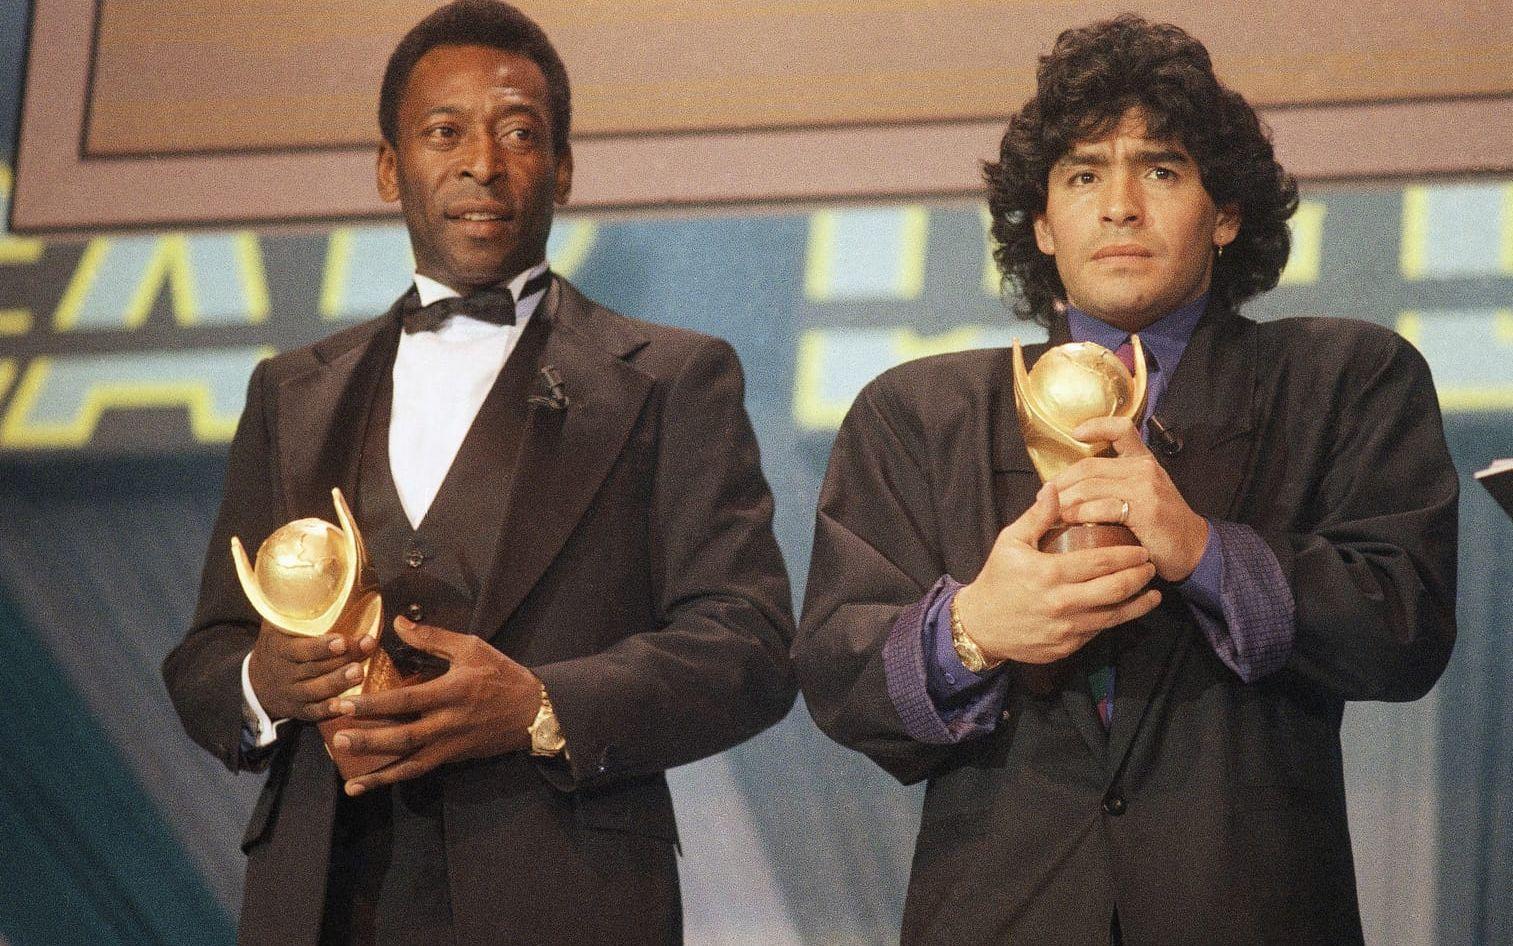 Länge sågs Pelé och Maradona som världens två överlägset bästa fotbollsspelare genom alla tider, nu har duon fått konkurrens av Lionel Messi och Cristiano Ronaldo.